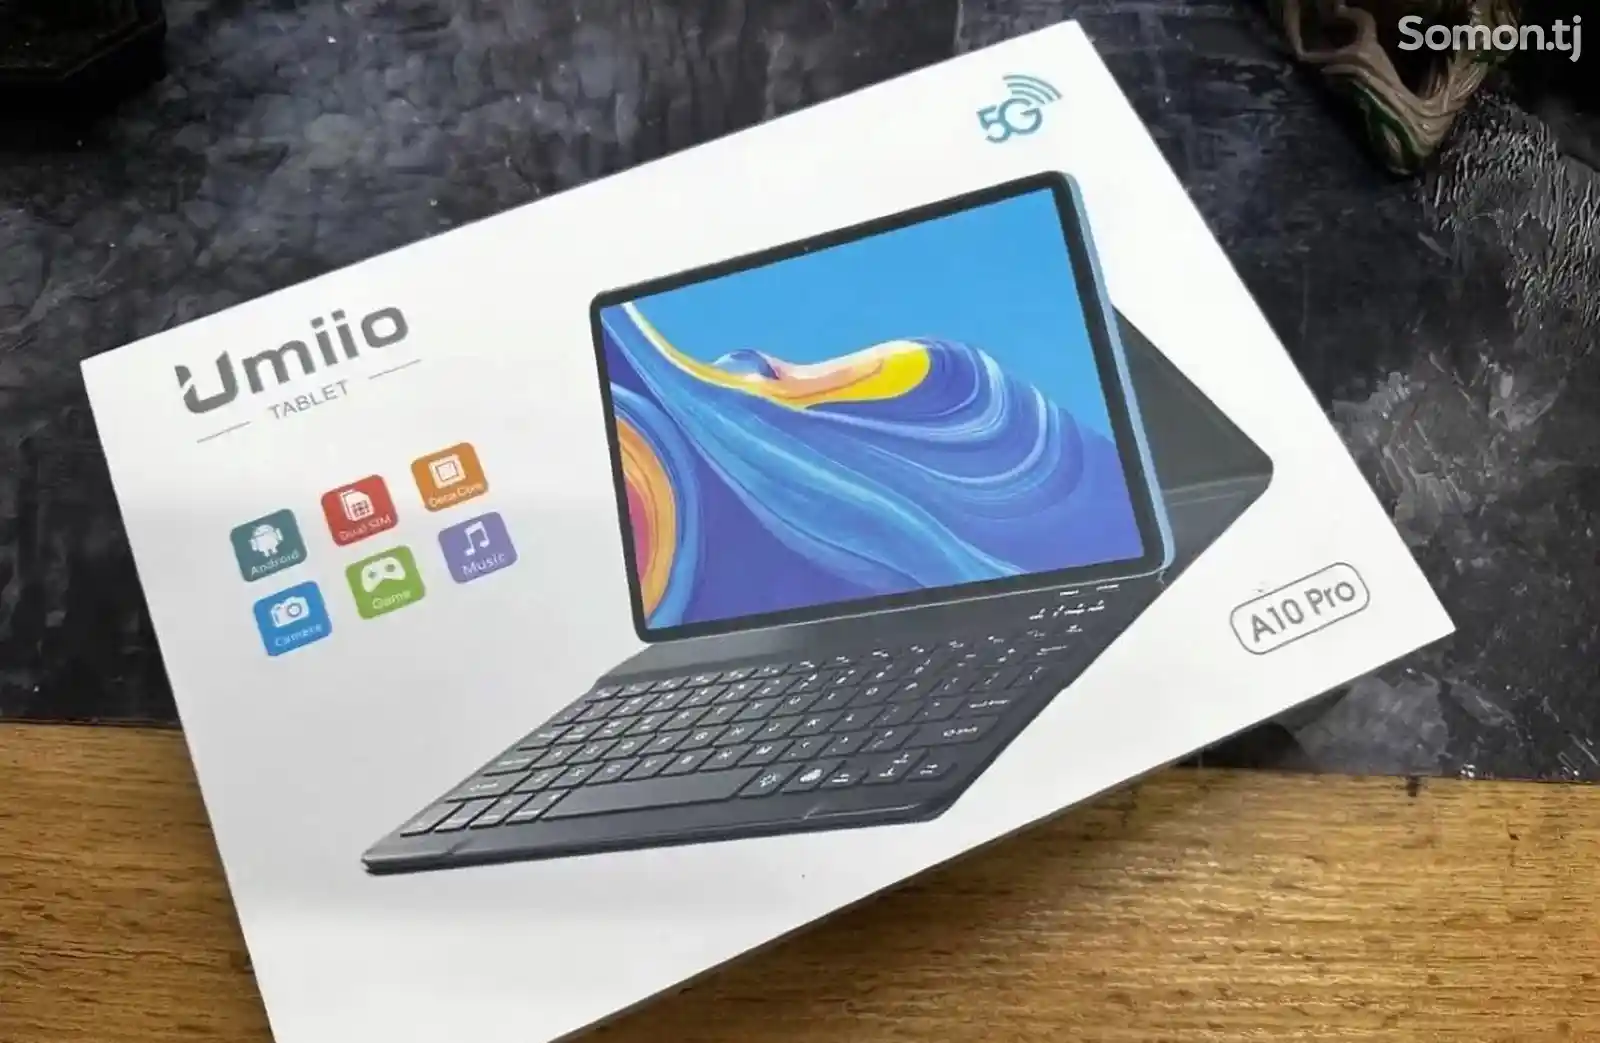 Многофункциональный планшет с клавиатурой Umiio A10 Pro-2